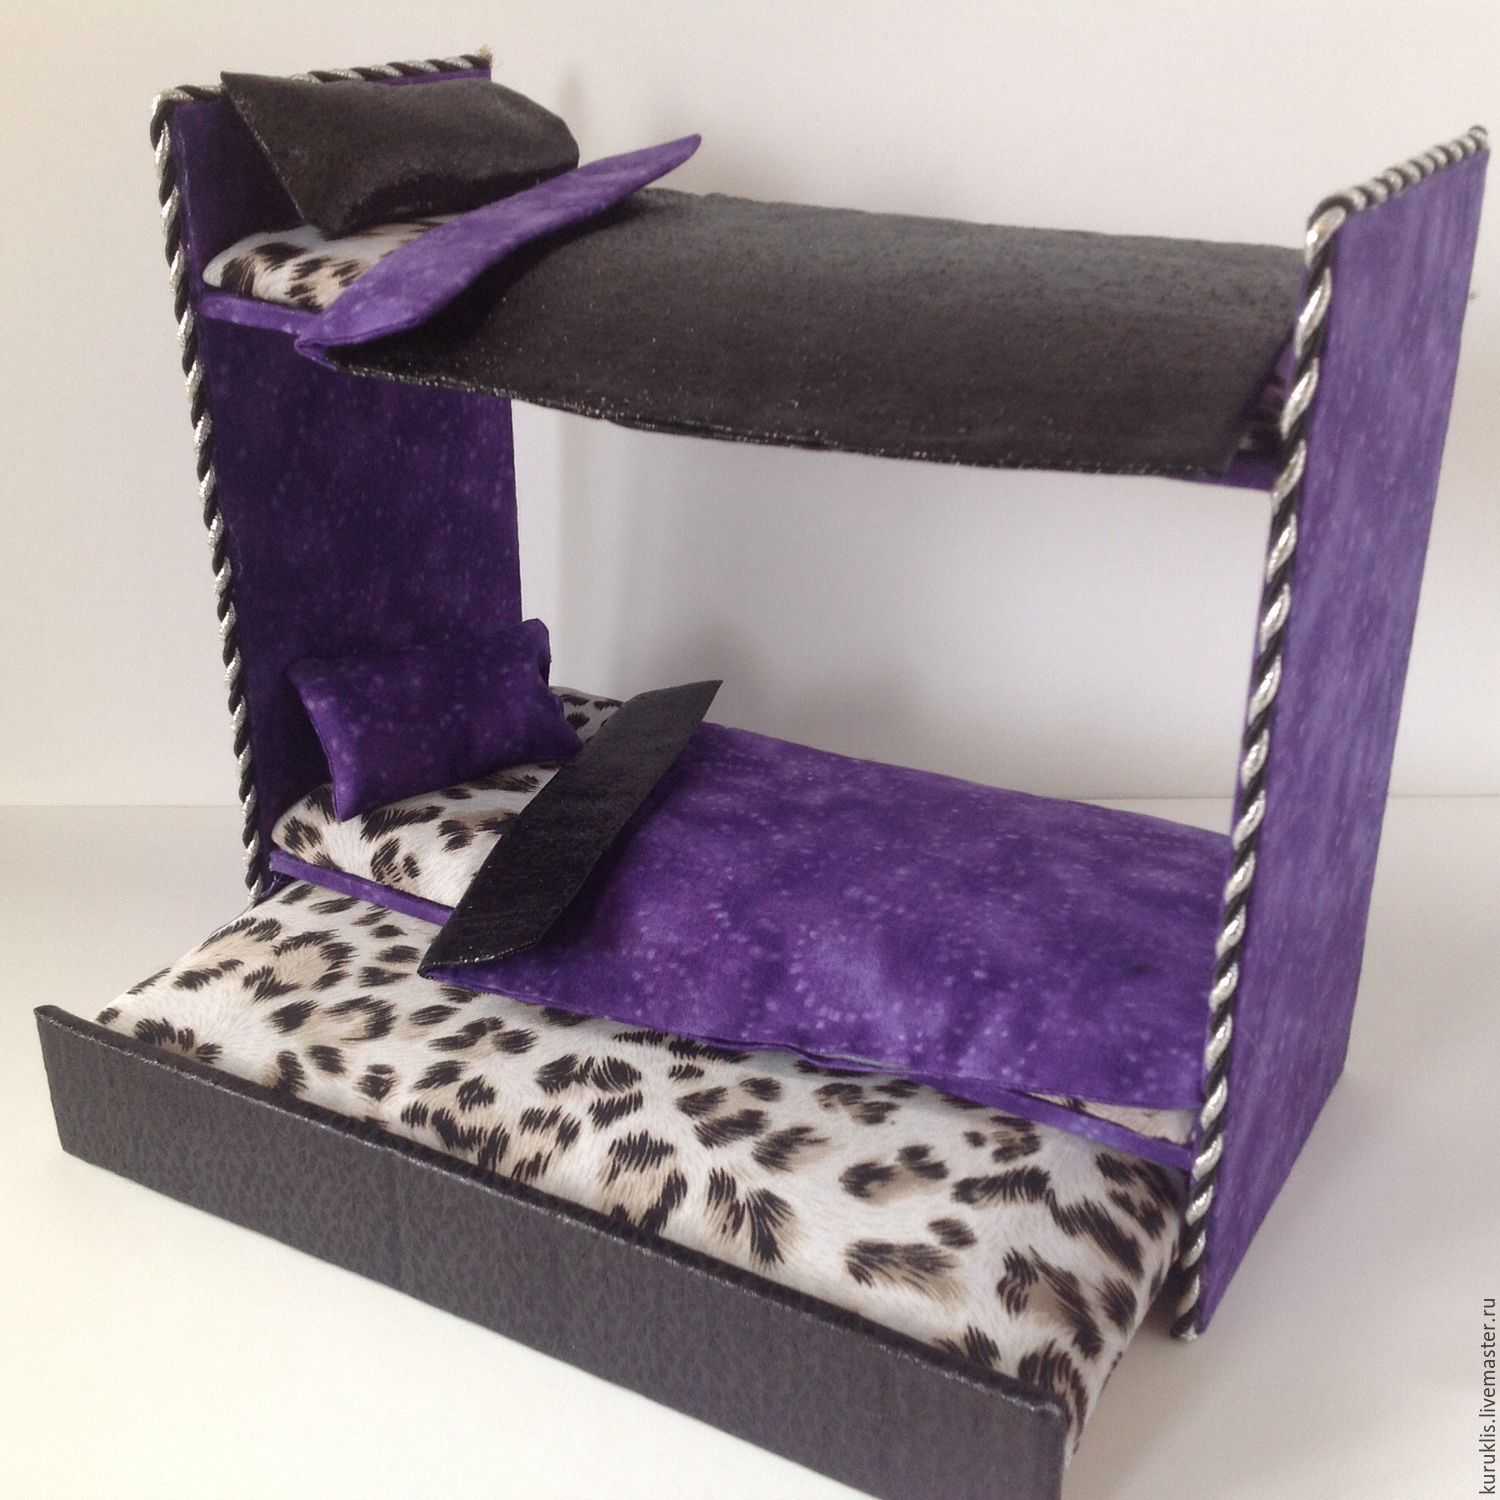 Двухъярусная кровать для кукол (три спальных места)